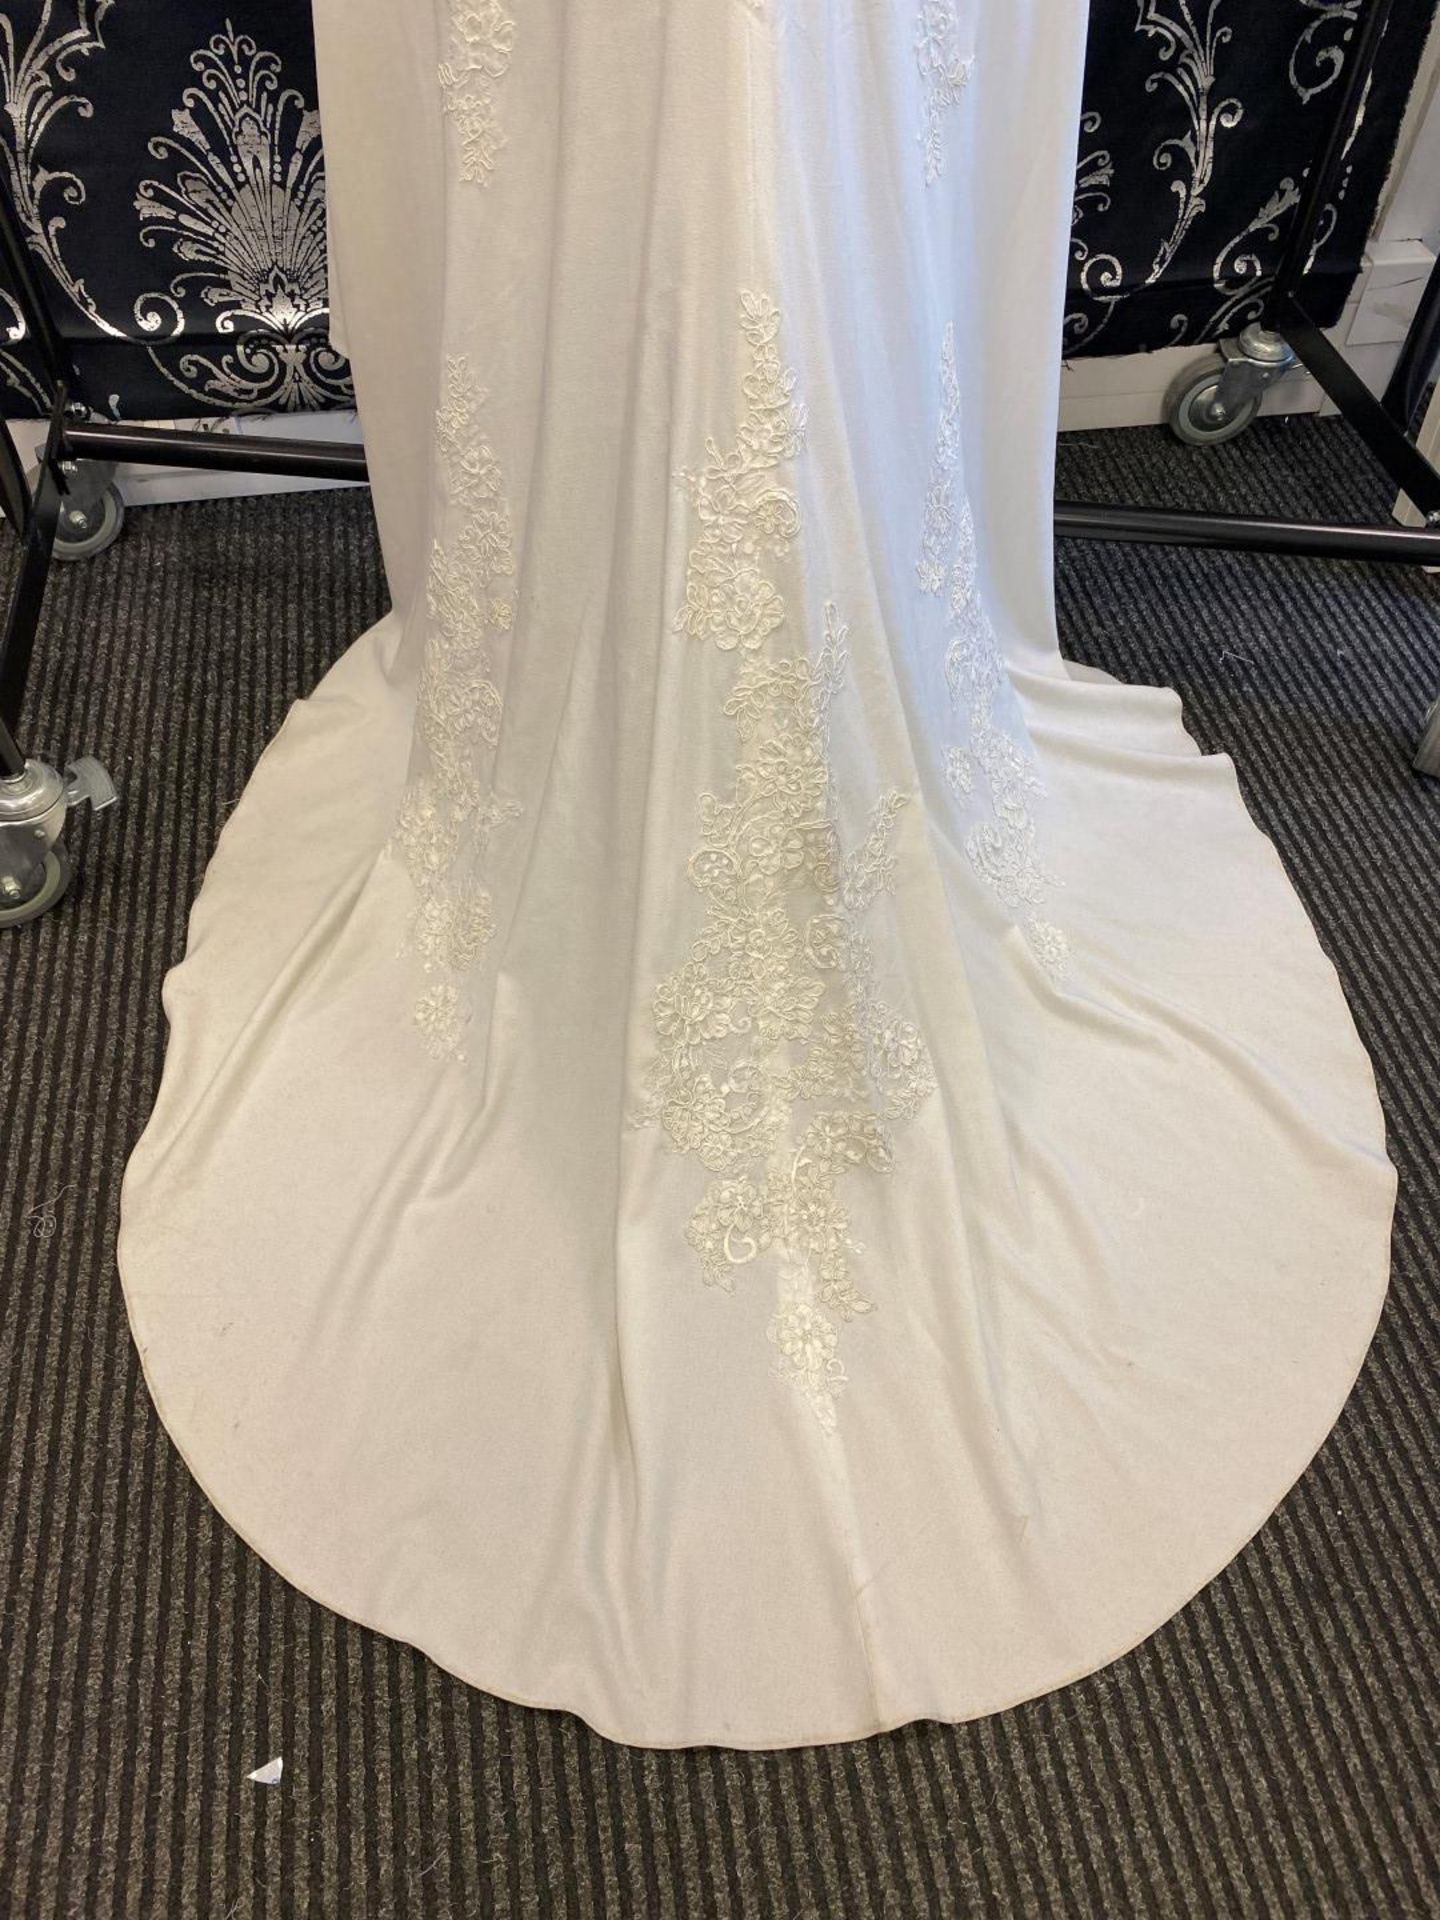 1 x MORI LEE Stunning Chiffon & Lace Biased Cut Designer Wedding Dress Bridal Gown RRP £1,500 UK 12 - Image 3 of 10